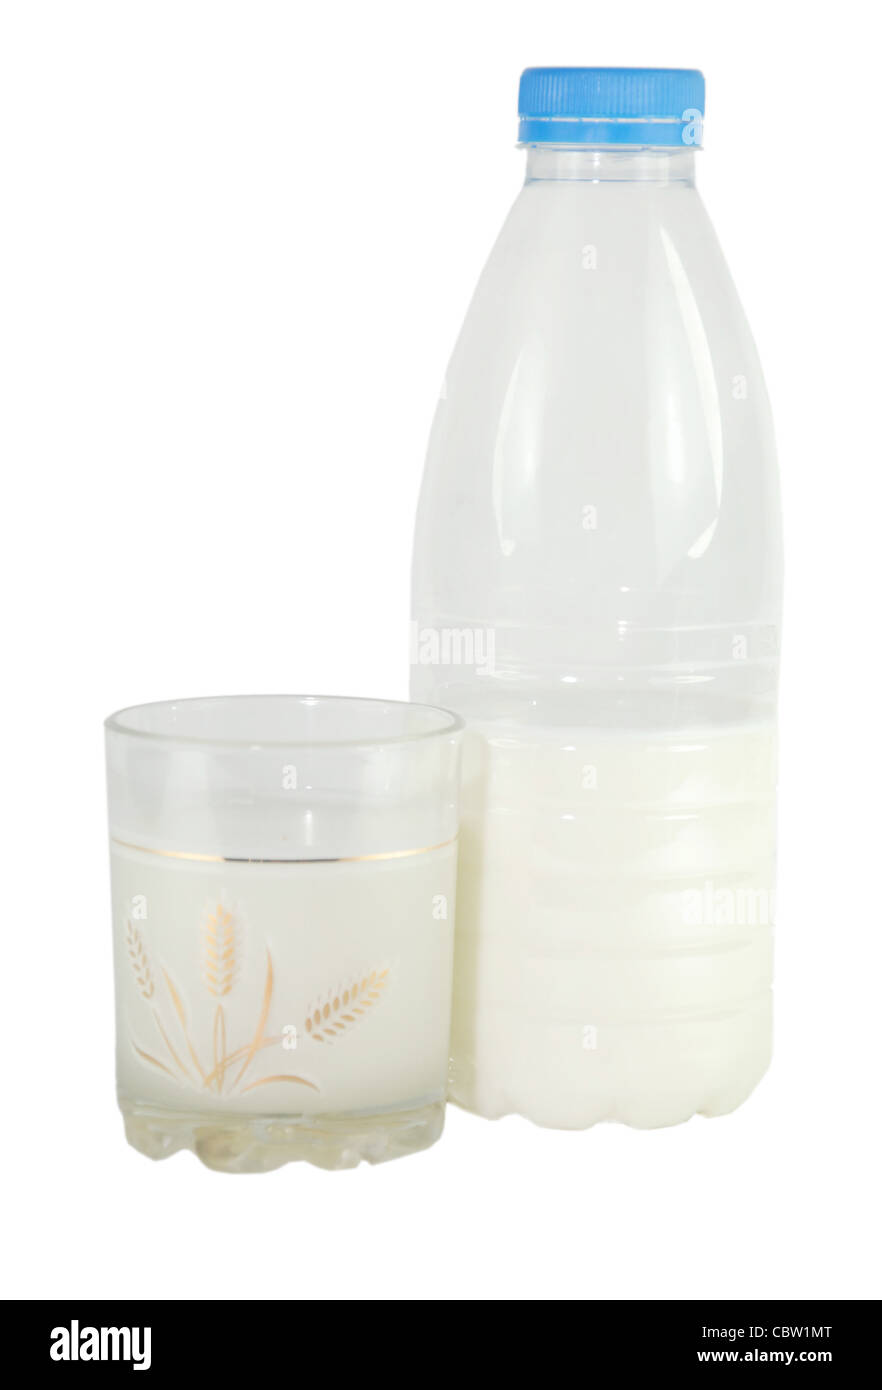 Vidrio, una botella de leche abundante, útil sobre un fondo negro Foto de stock